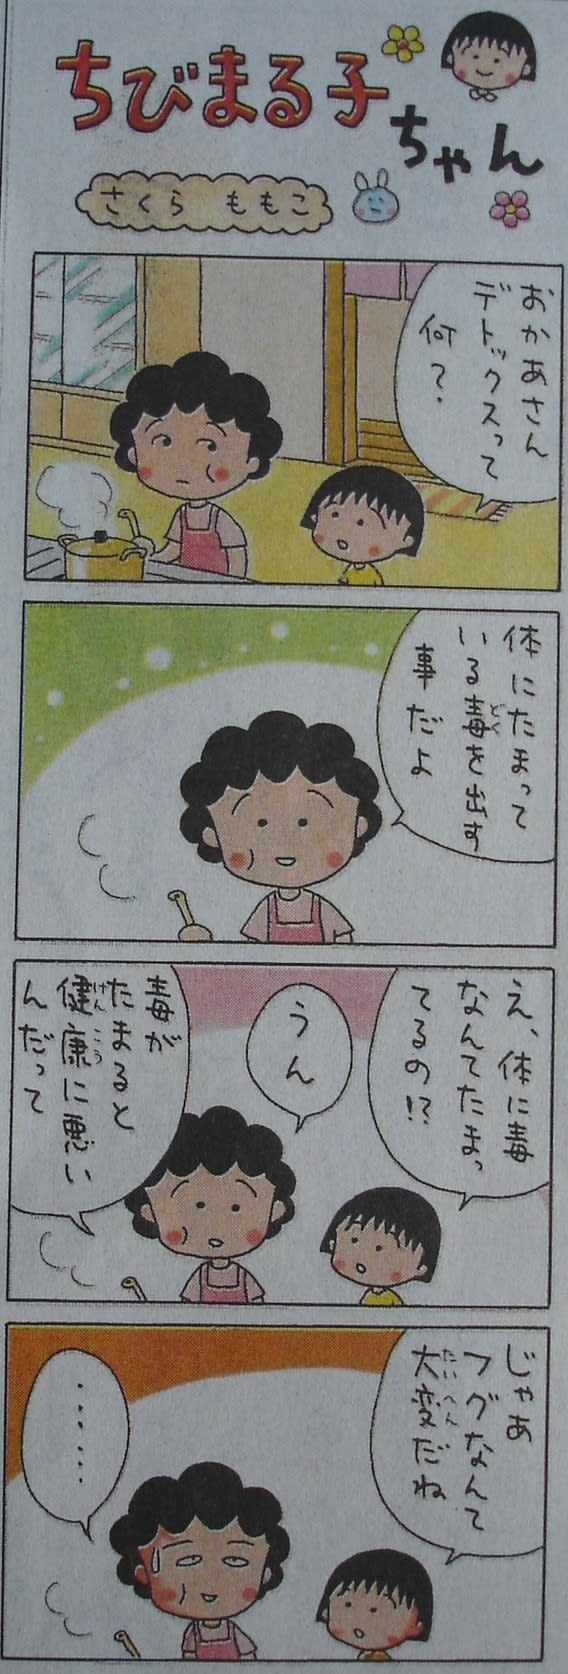 ちびまる子ちゃん 新聞紙 4コマ漫画切り抜き | signalstationpizza.com